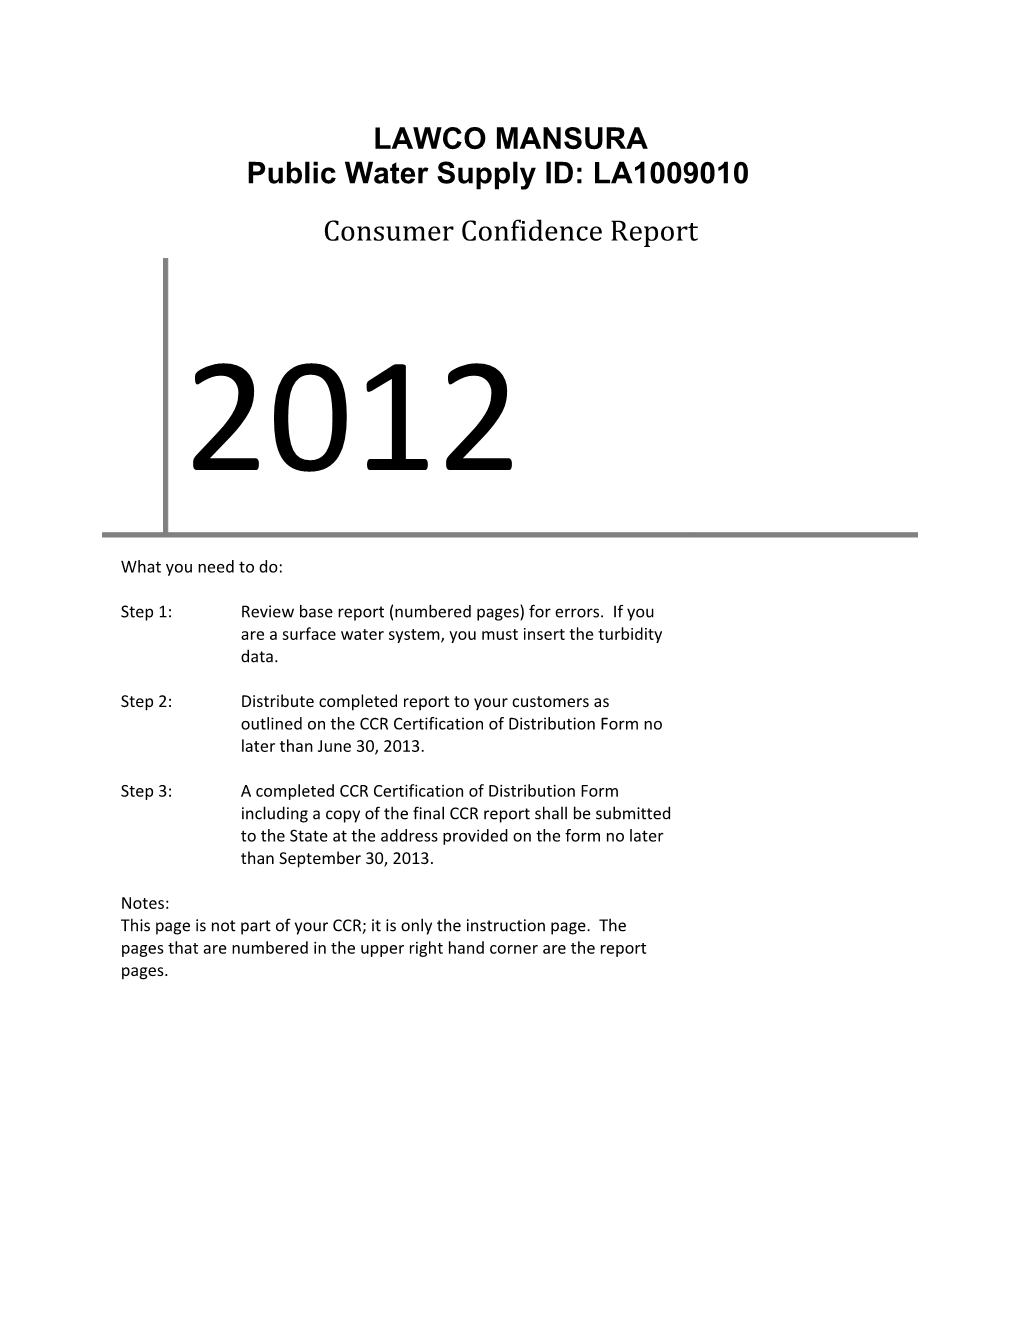 Public Water Supply ID: LA1009010